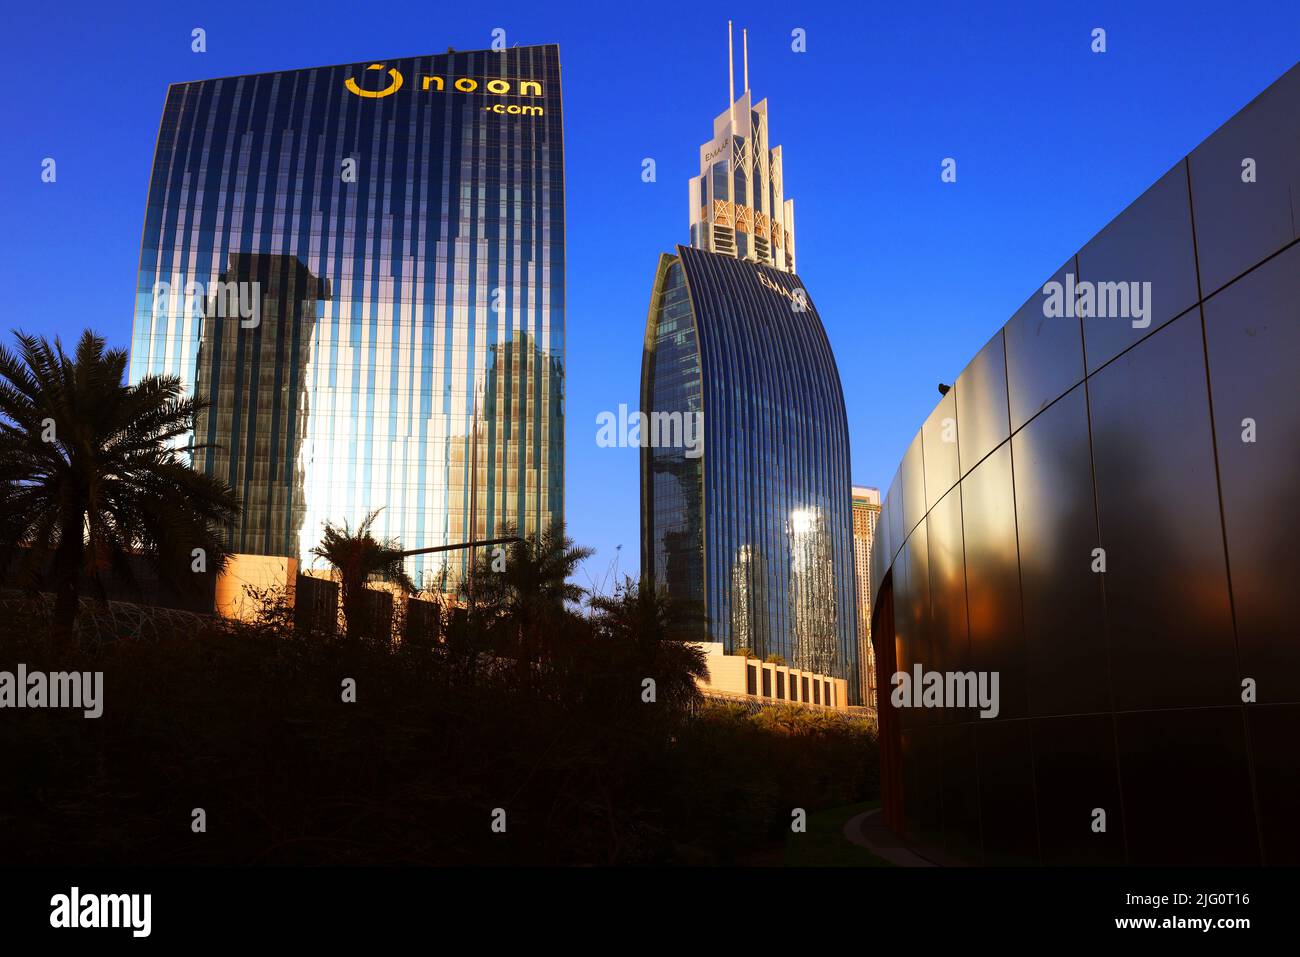 Spiegelung, Dubai, , moderne Architektur, Atemberaubende Aussicht auf die Skyline mit Hochhäuser, rascacielos y hotel Foto de stock